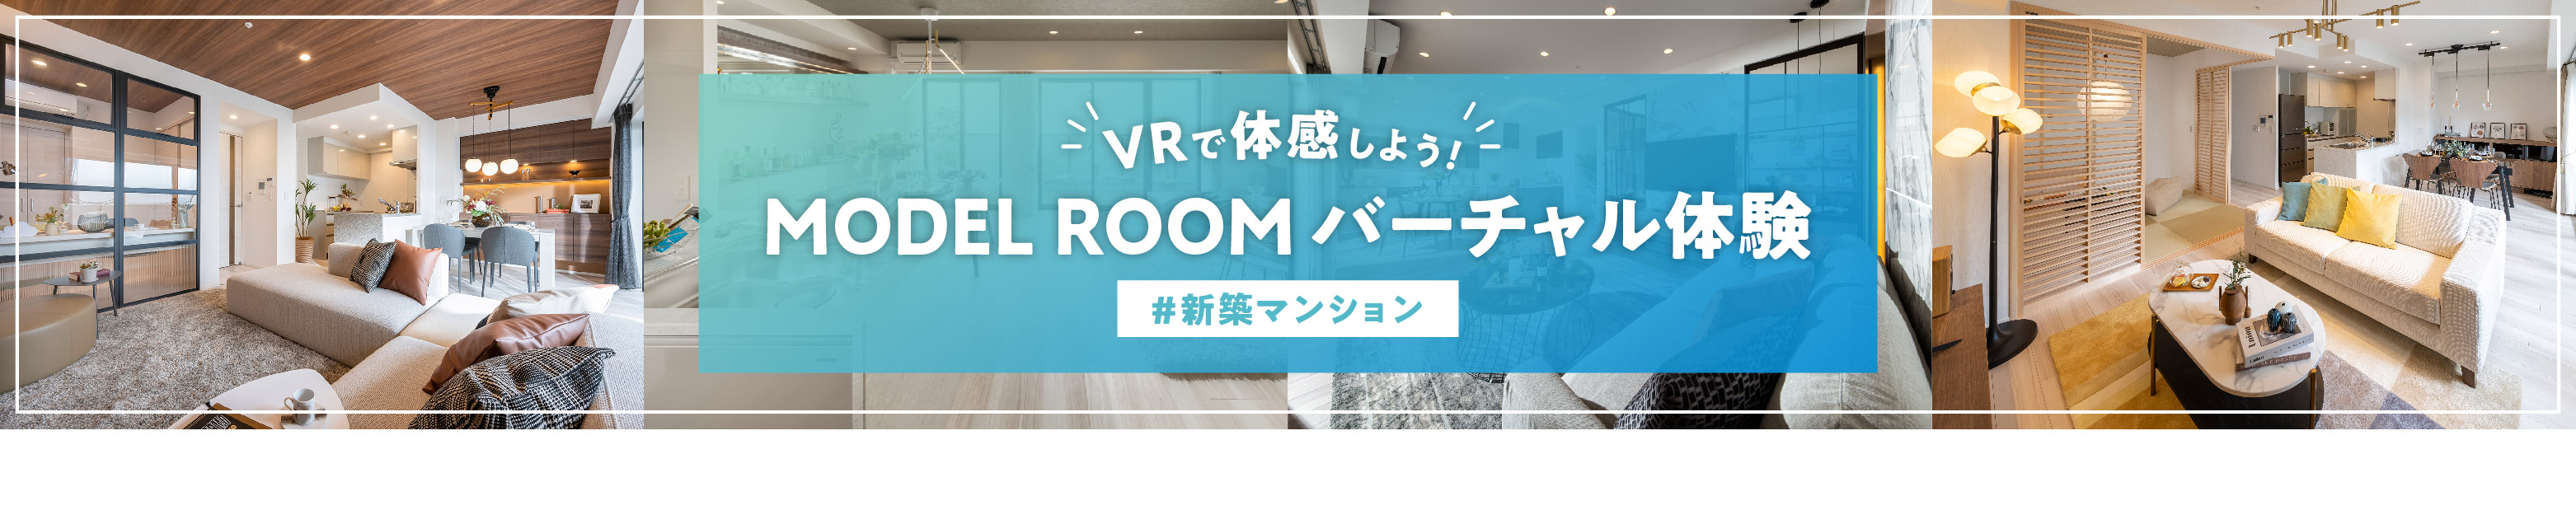 【新築マンション】MODEL ROOM バーチャル体験